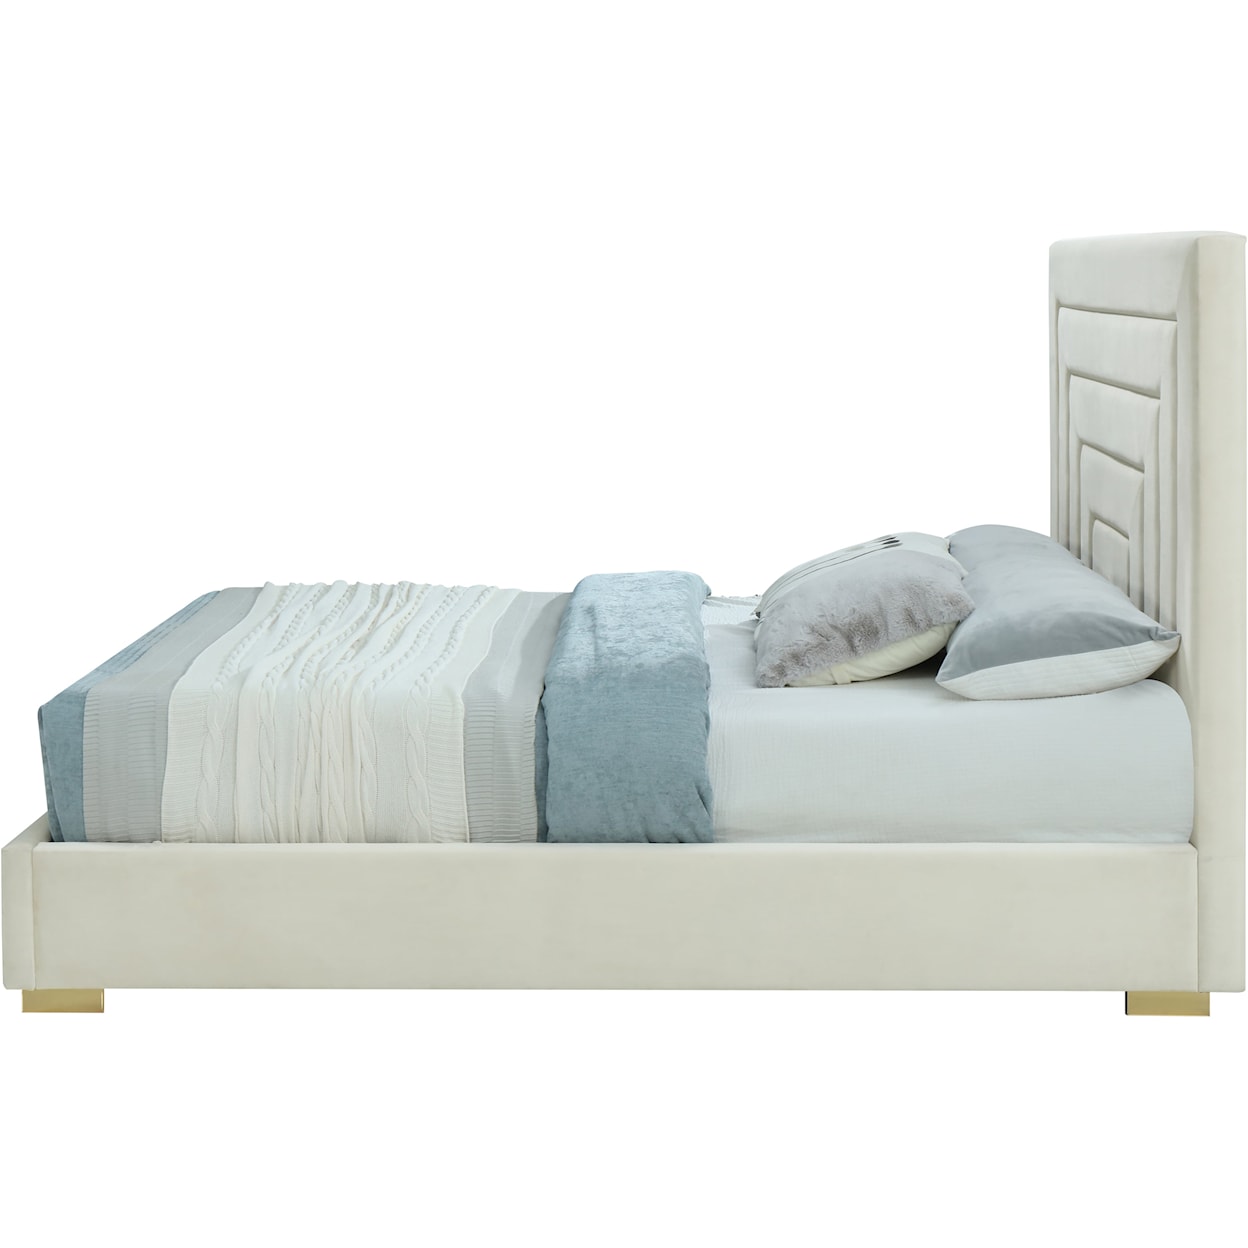 Meridian Furniture Nora Queen Bed